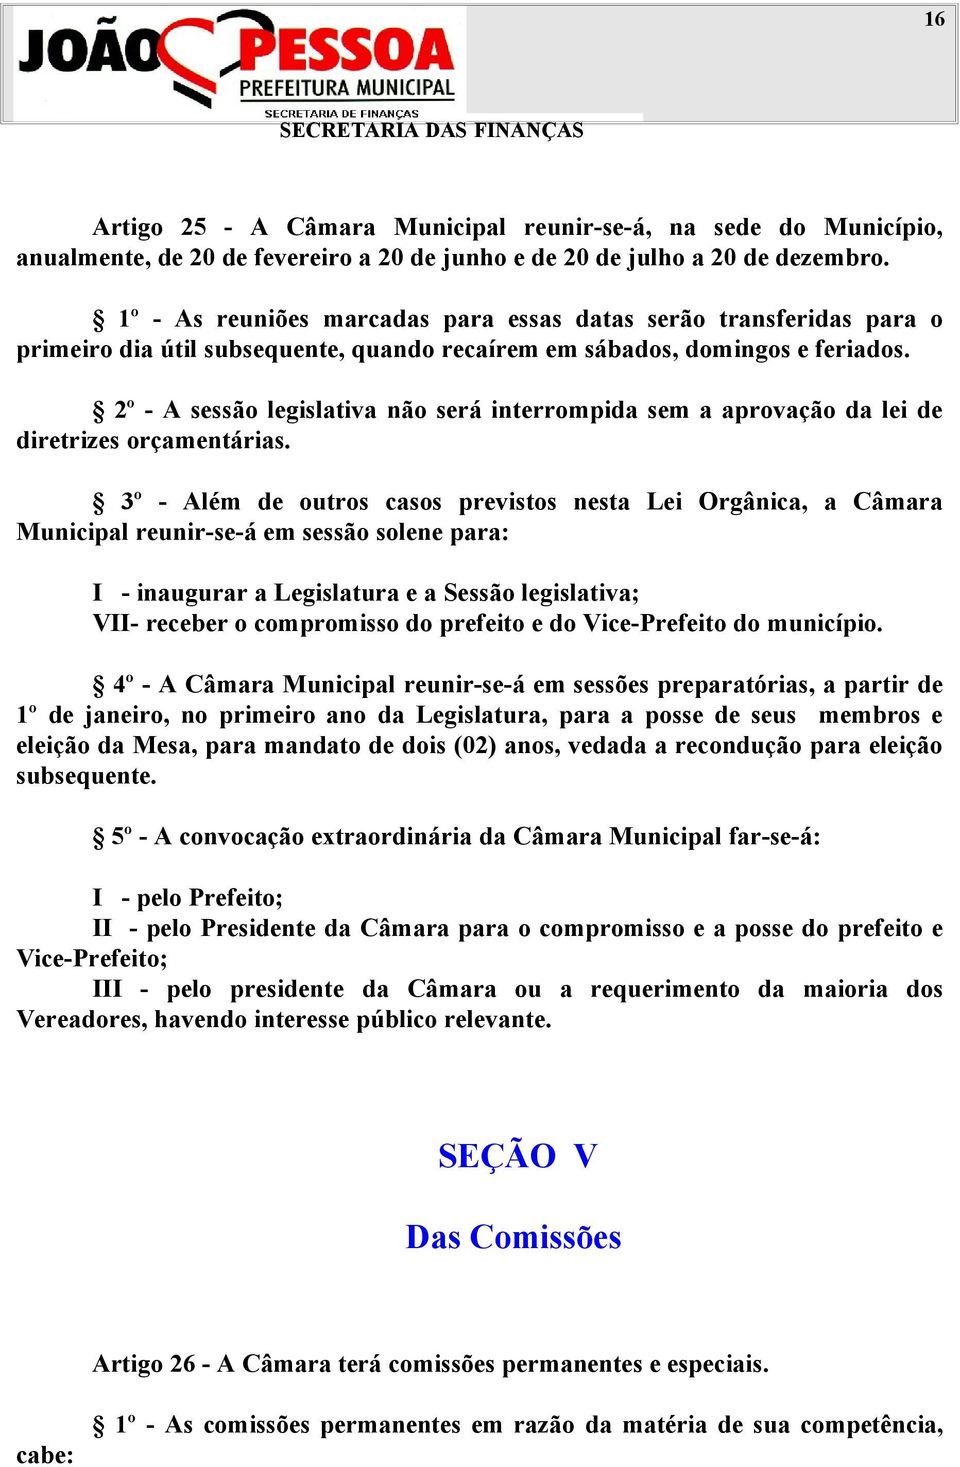 2º - A sessão legislativa não será interrompida sem a aprovação da lei de diretrizes orçamentárias.